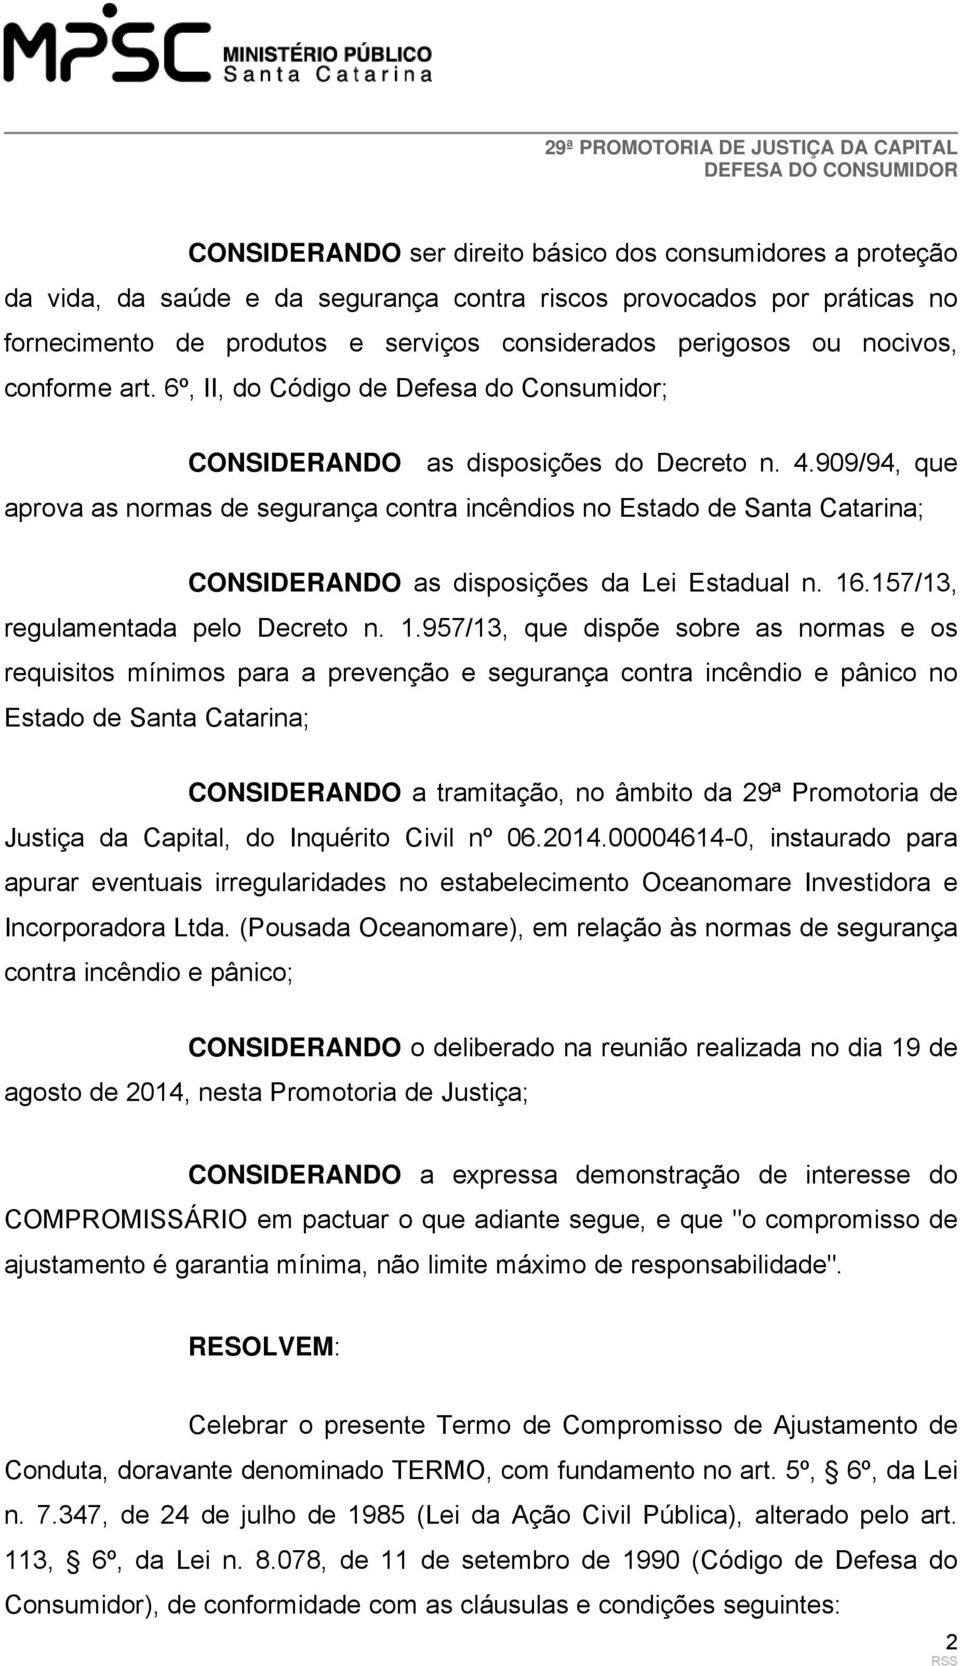 909/94, que aprova as normas de segurança contra incêndios no Estado de Santa Catarina; CONSIDERANDO as disposições da Lei Estadual n. 16